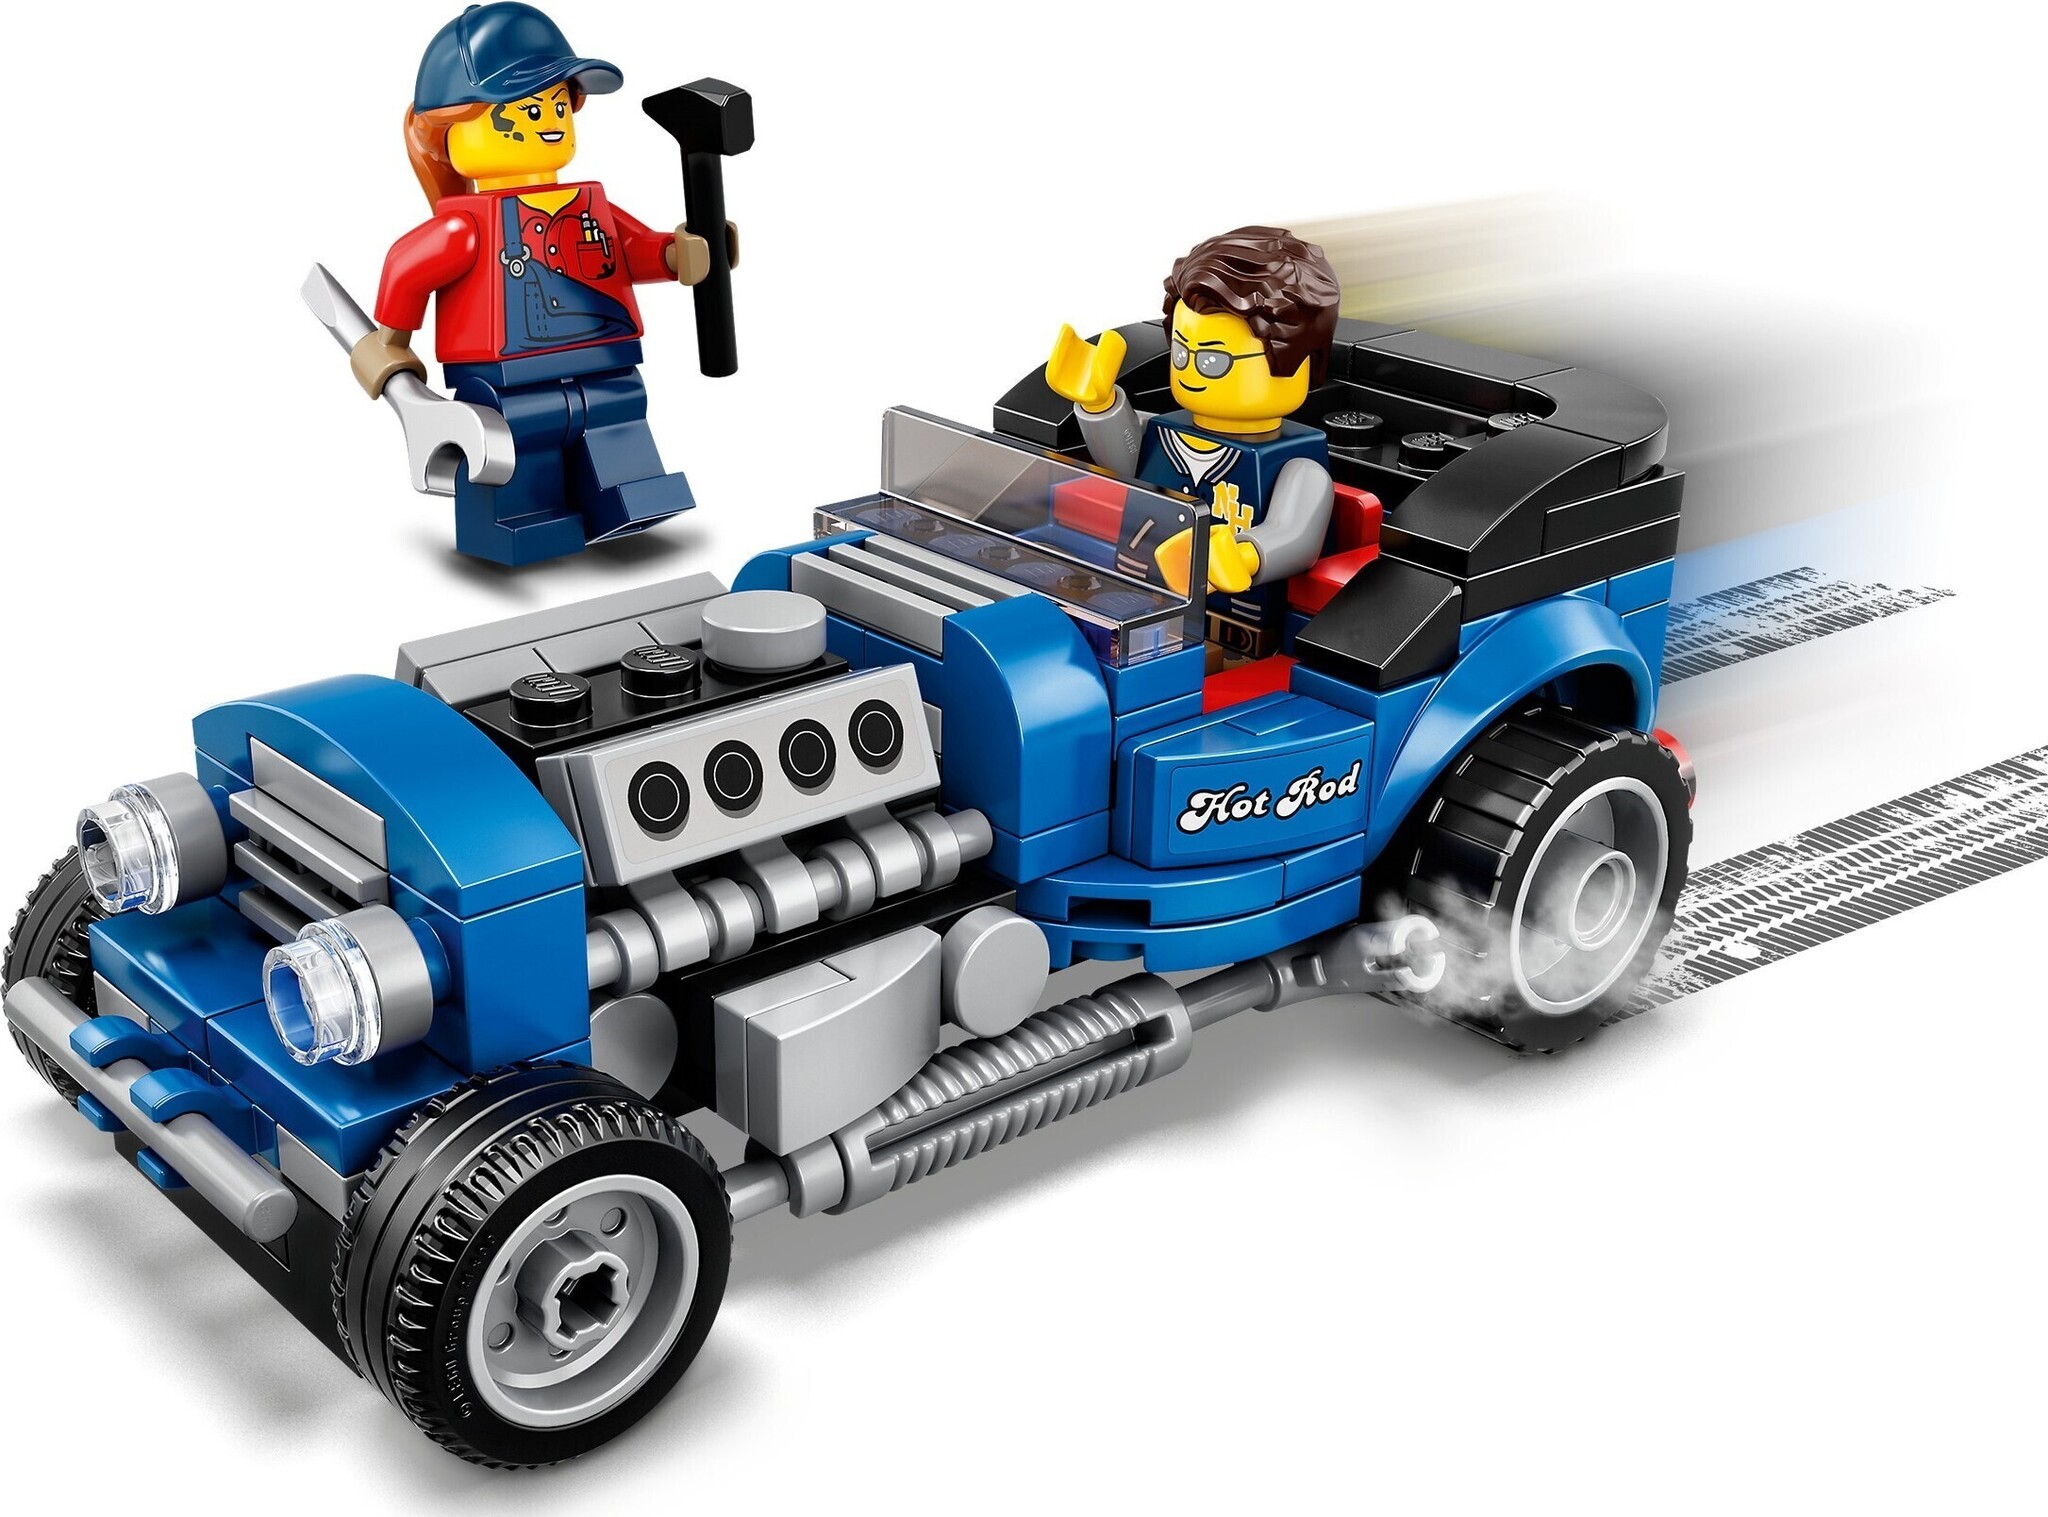 LEGO Promotion 40370 - Ensemble LEGO Trains 40ème Anniversaire